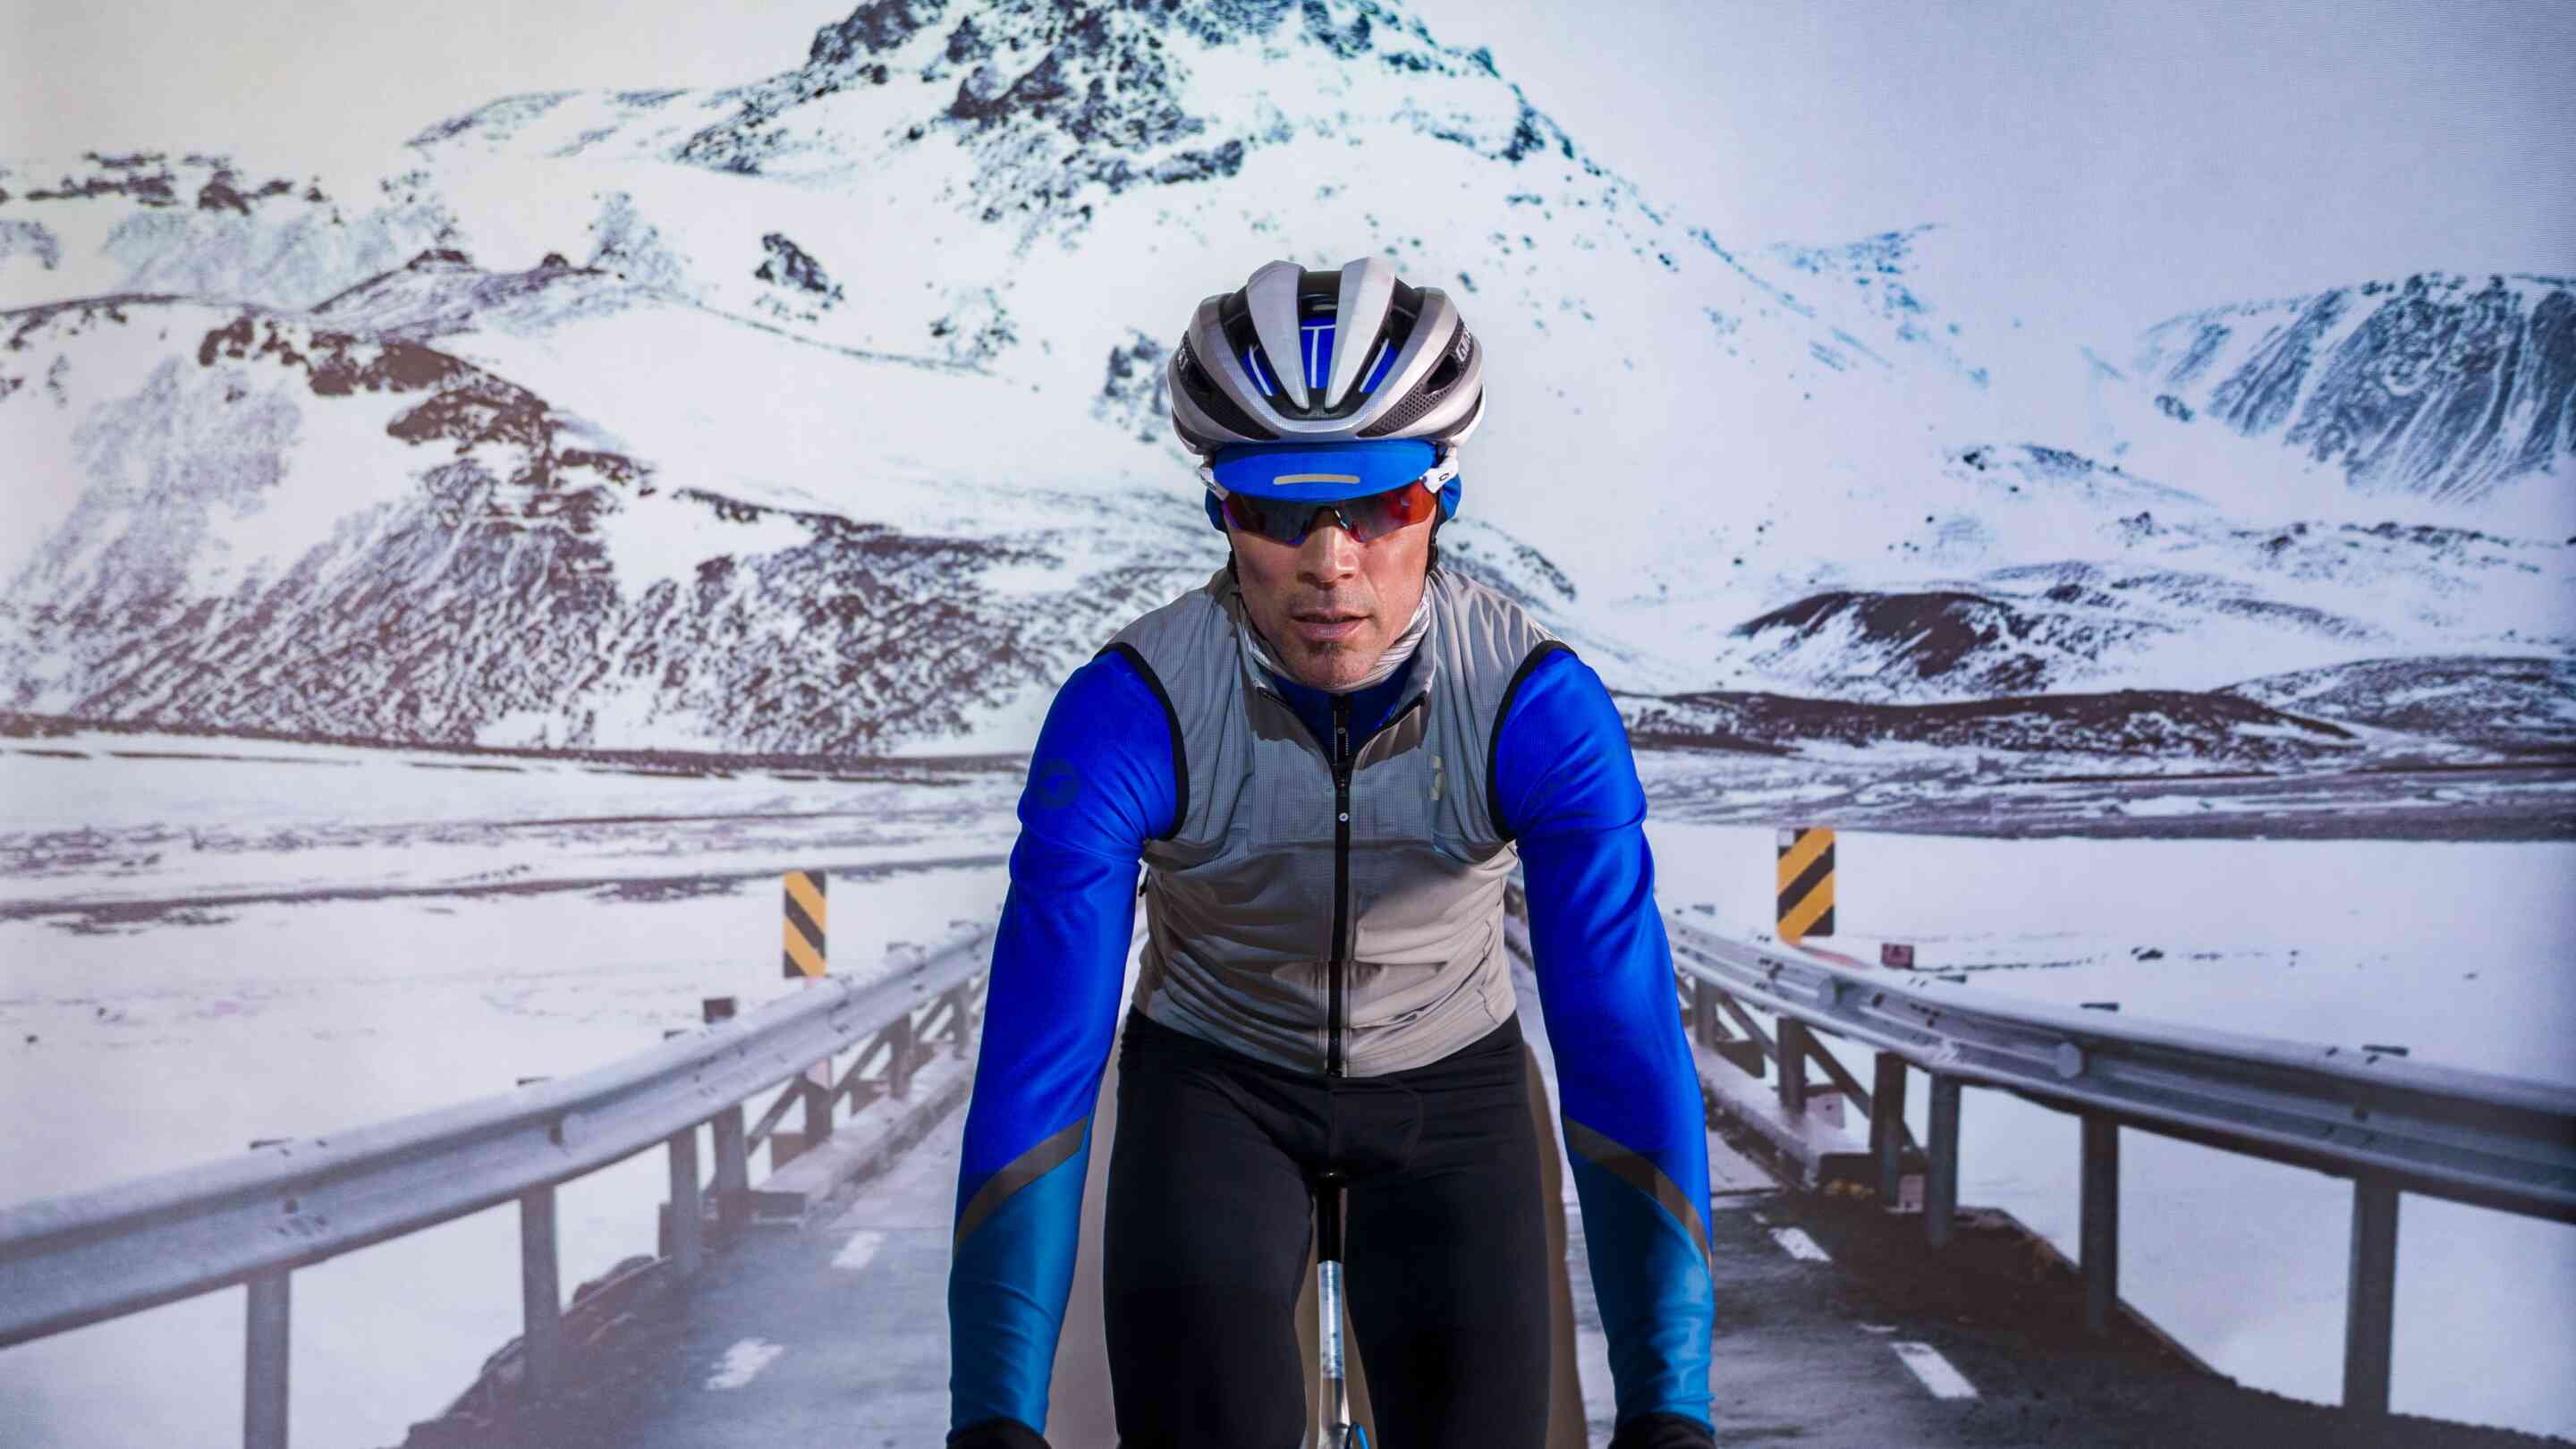 Polartec Alpha Cycling Gear for Winter